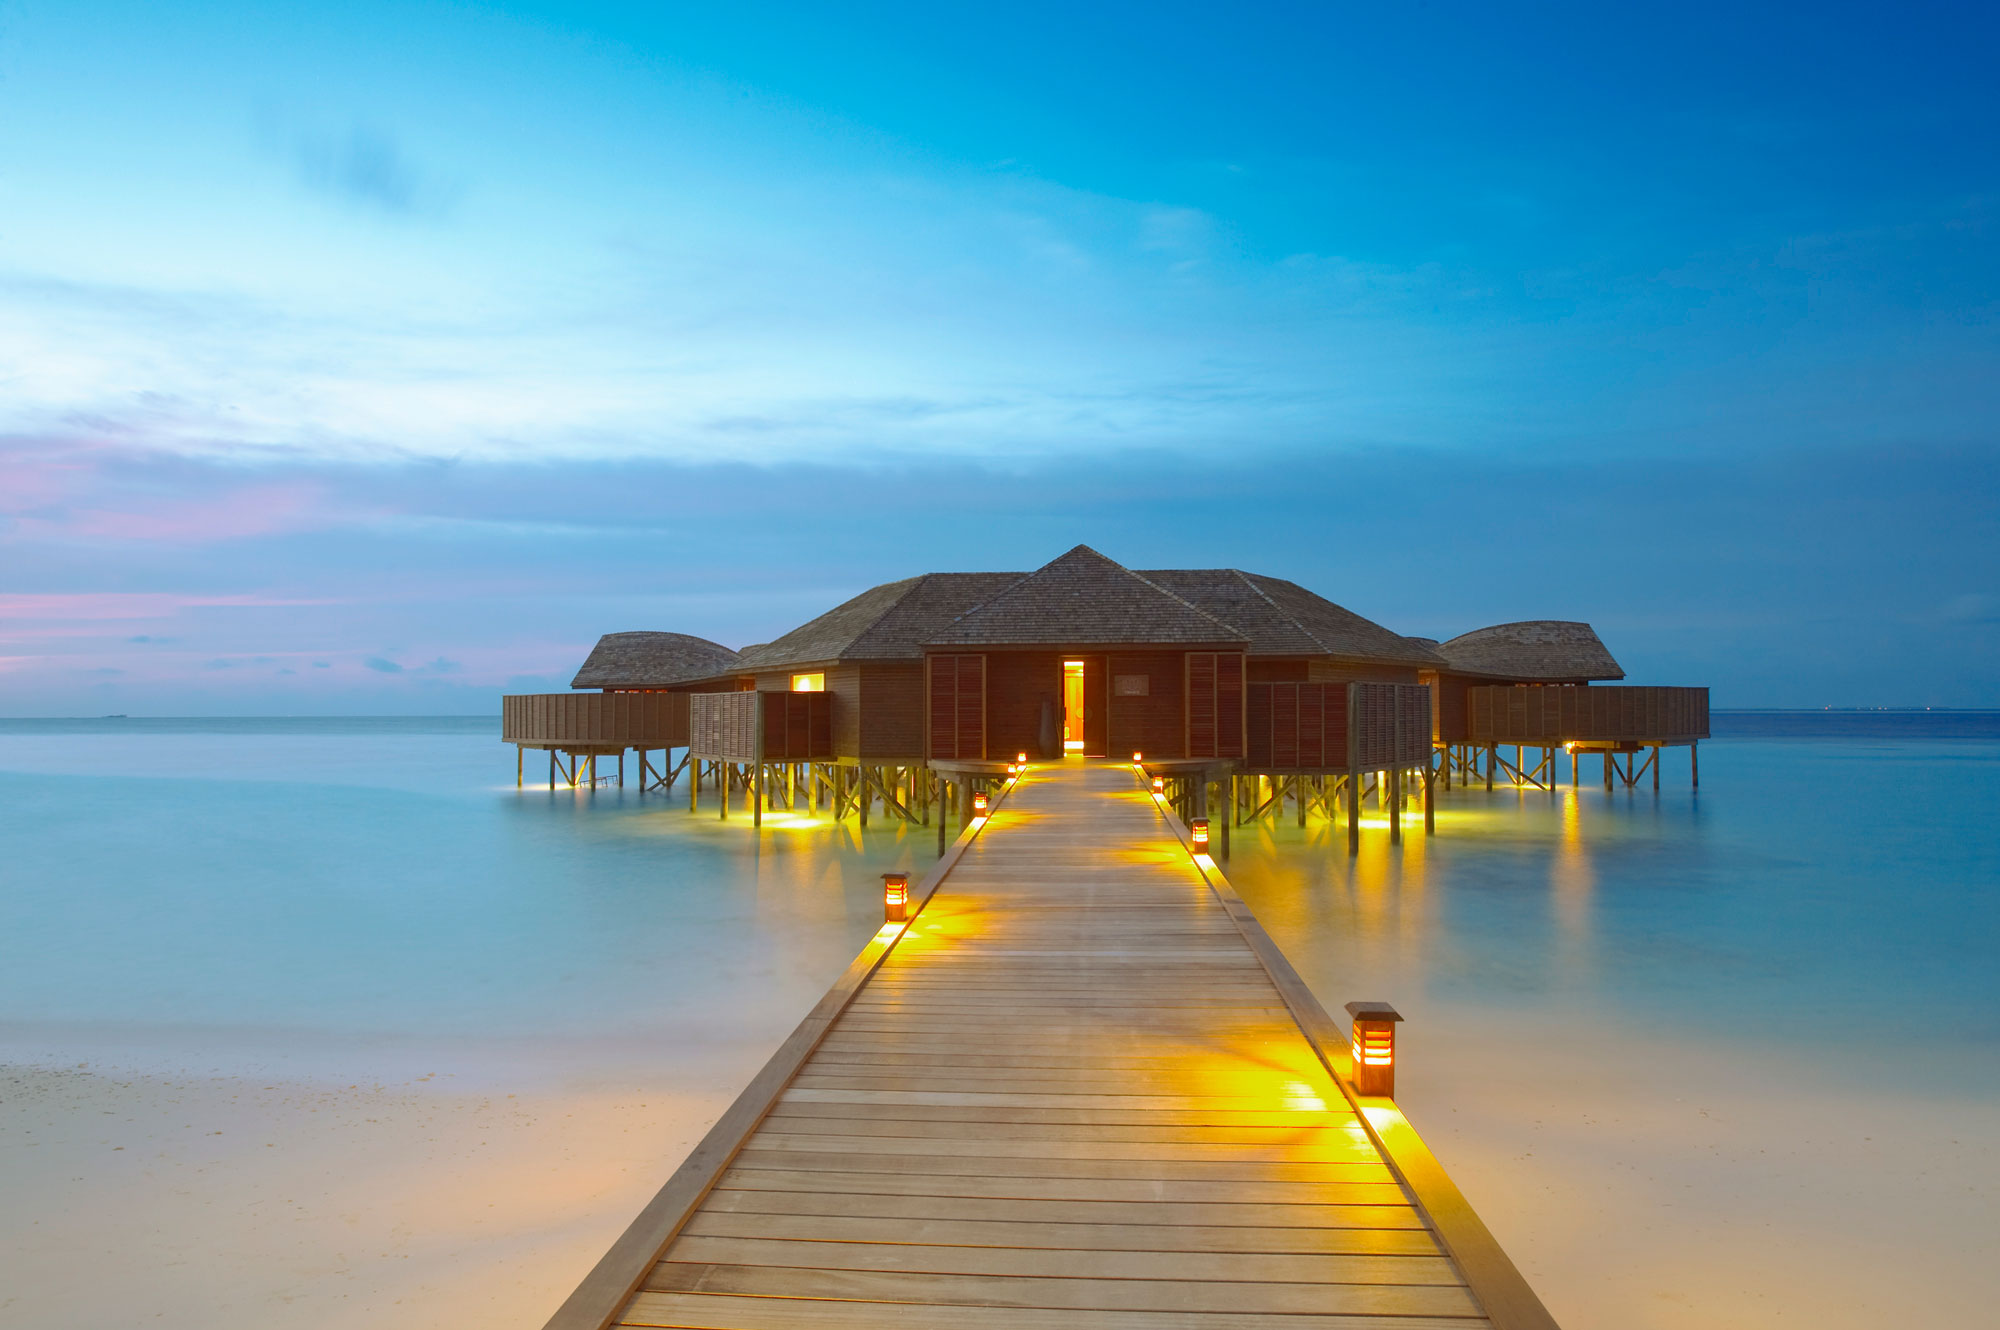 Lily Beach Resort & Spa in Maldives | Architecture & Design